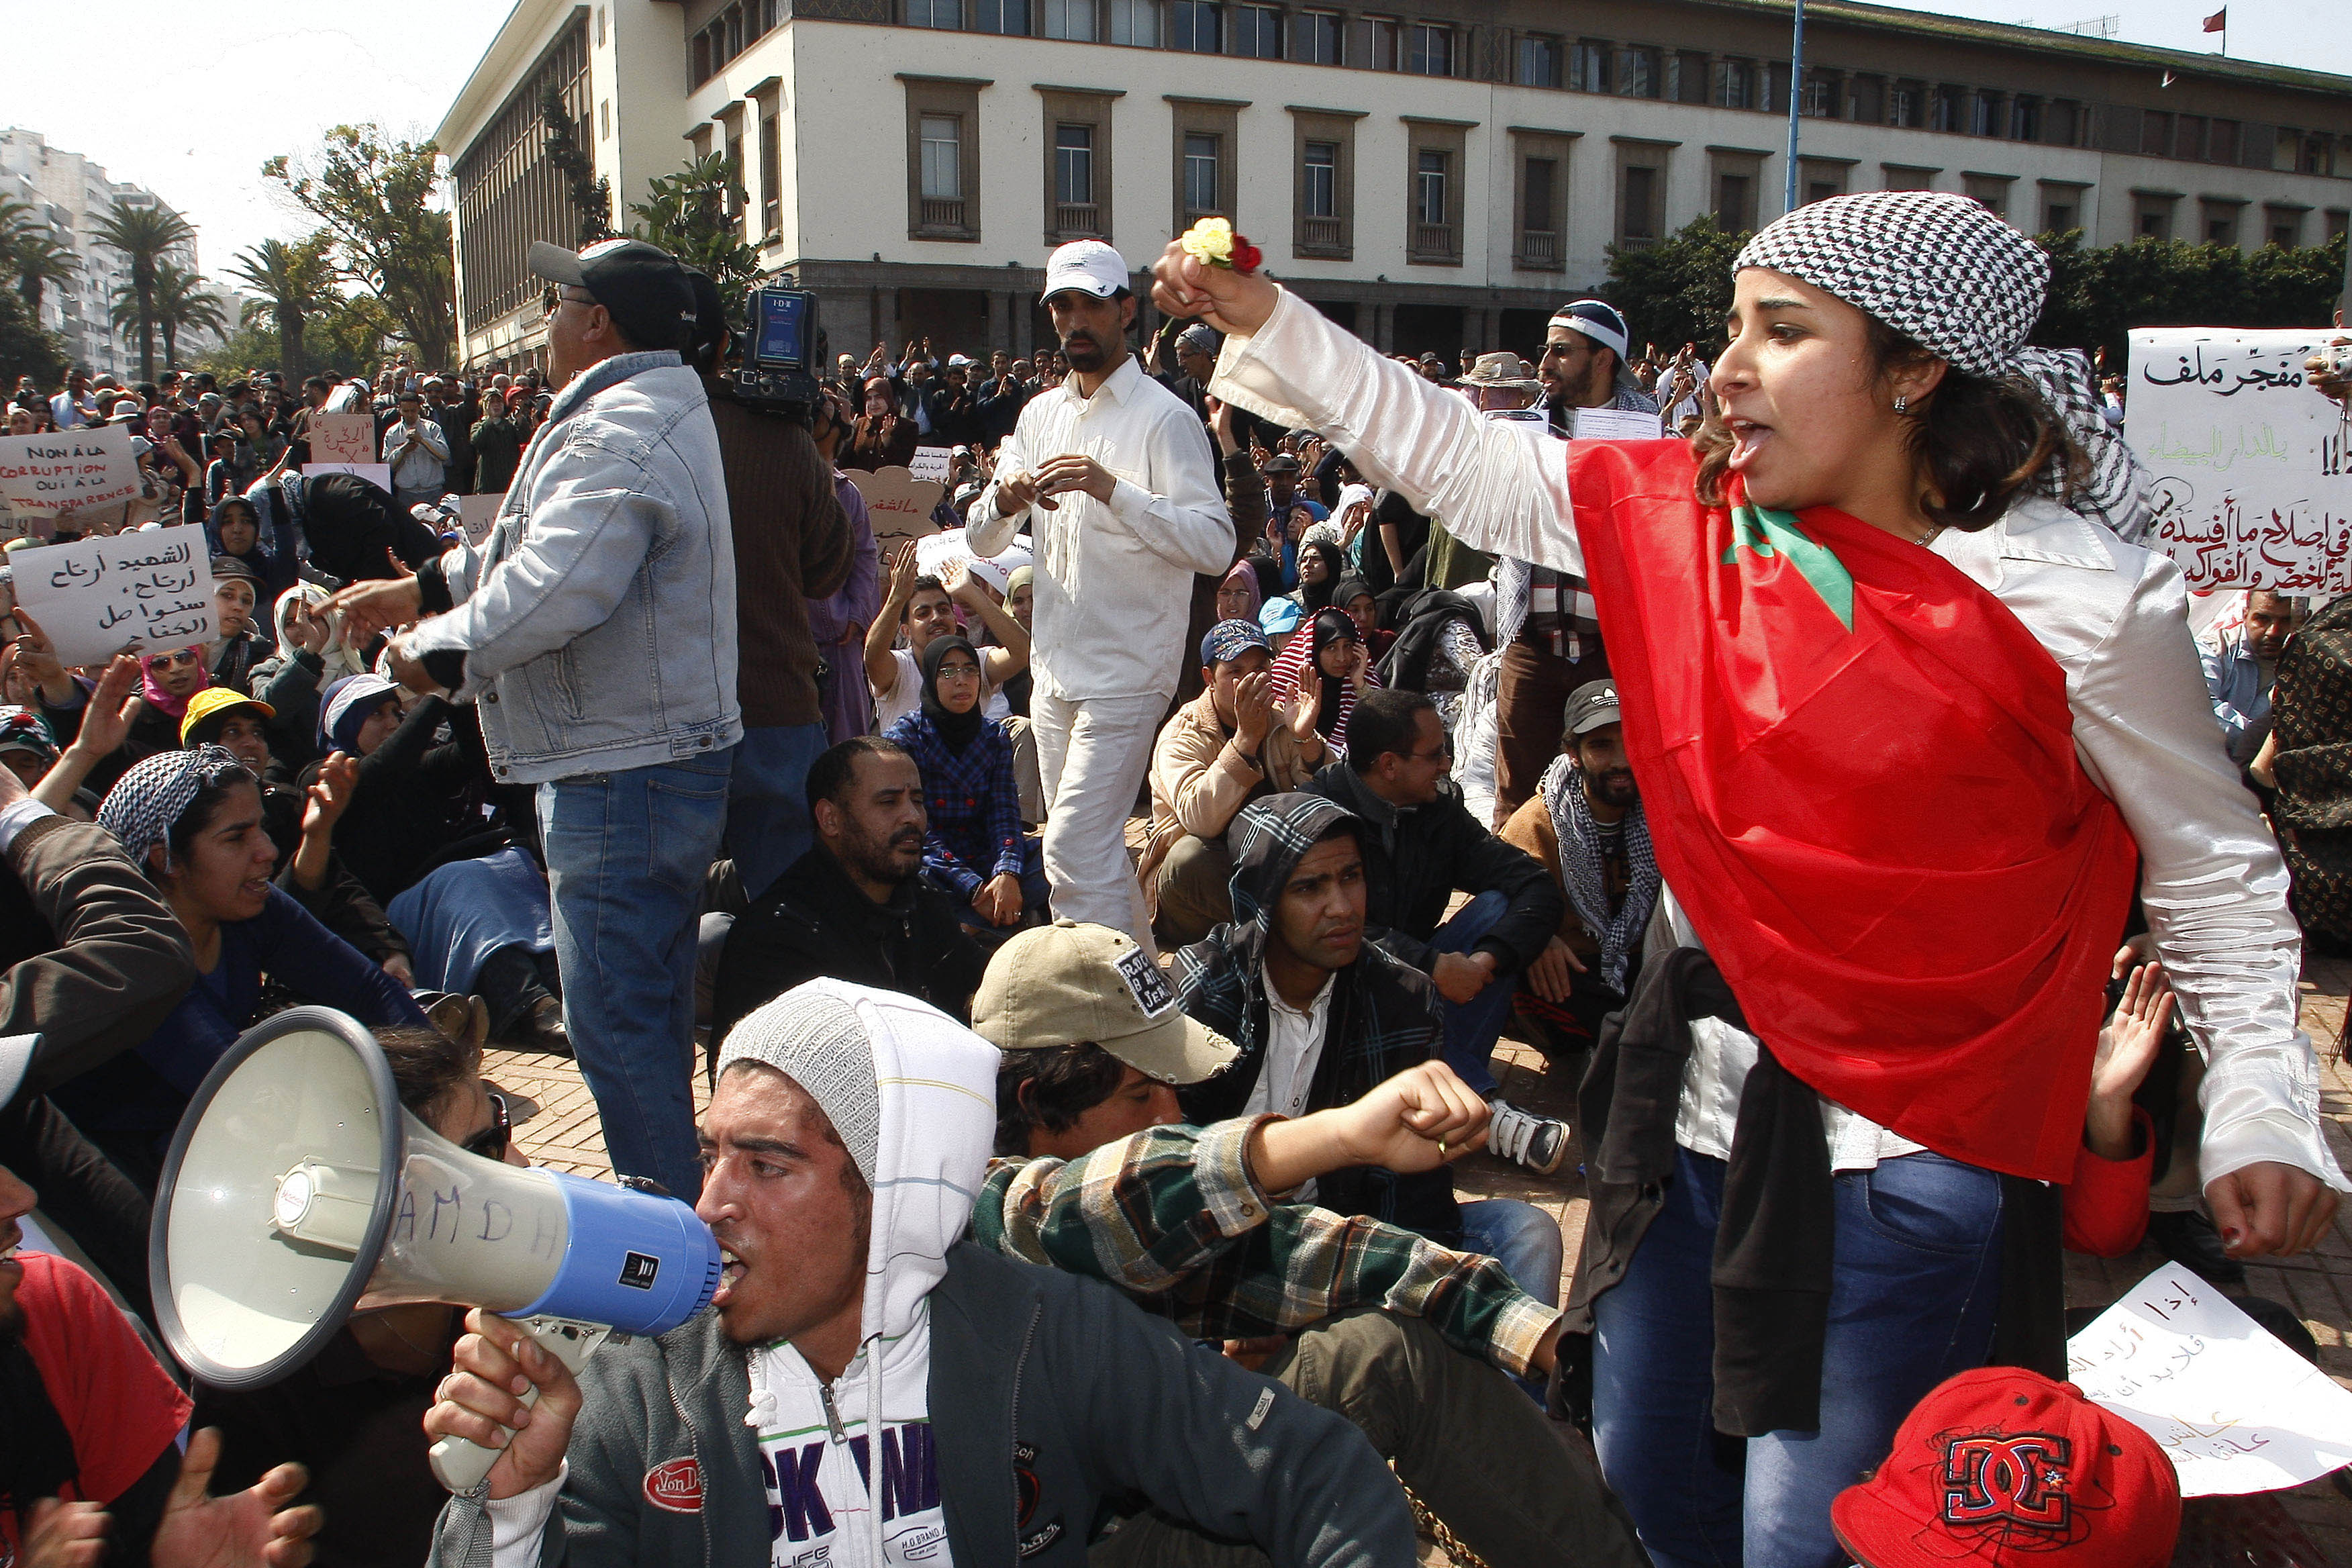 Protester, Uppror, Demonstration, Marocko, Svenska kungahuset, Revolution